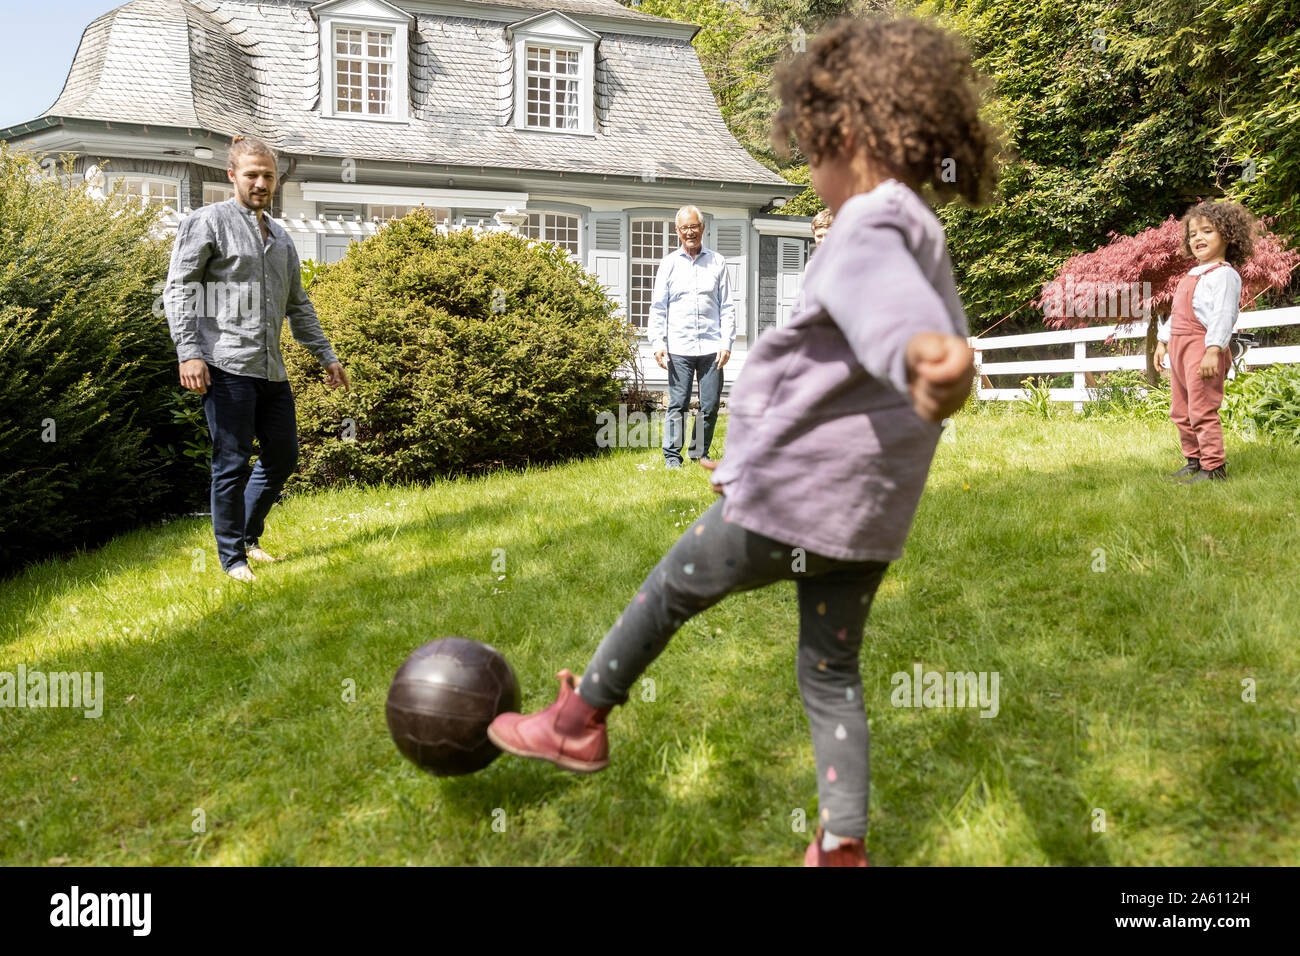 Familia feliz jugando al fútbol en el jardín Foto de stock